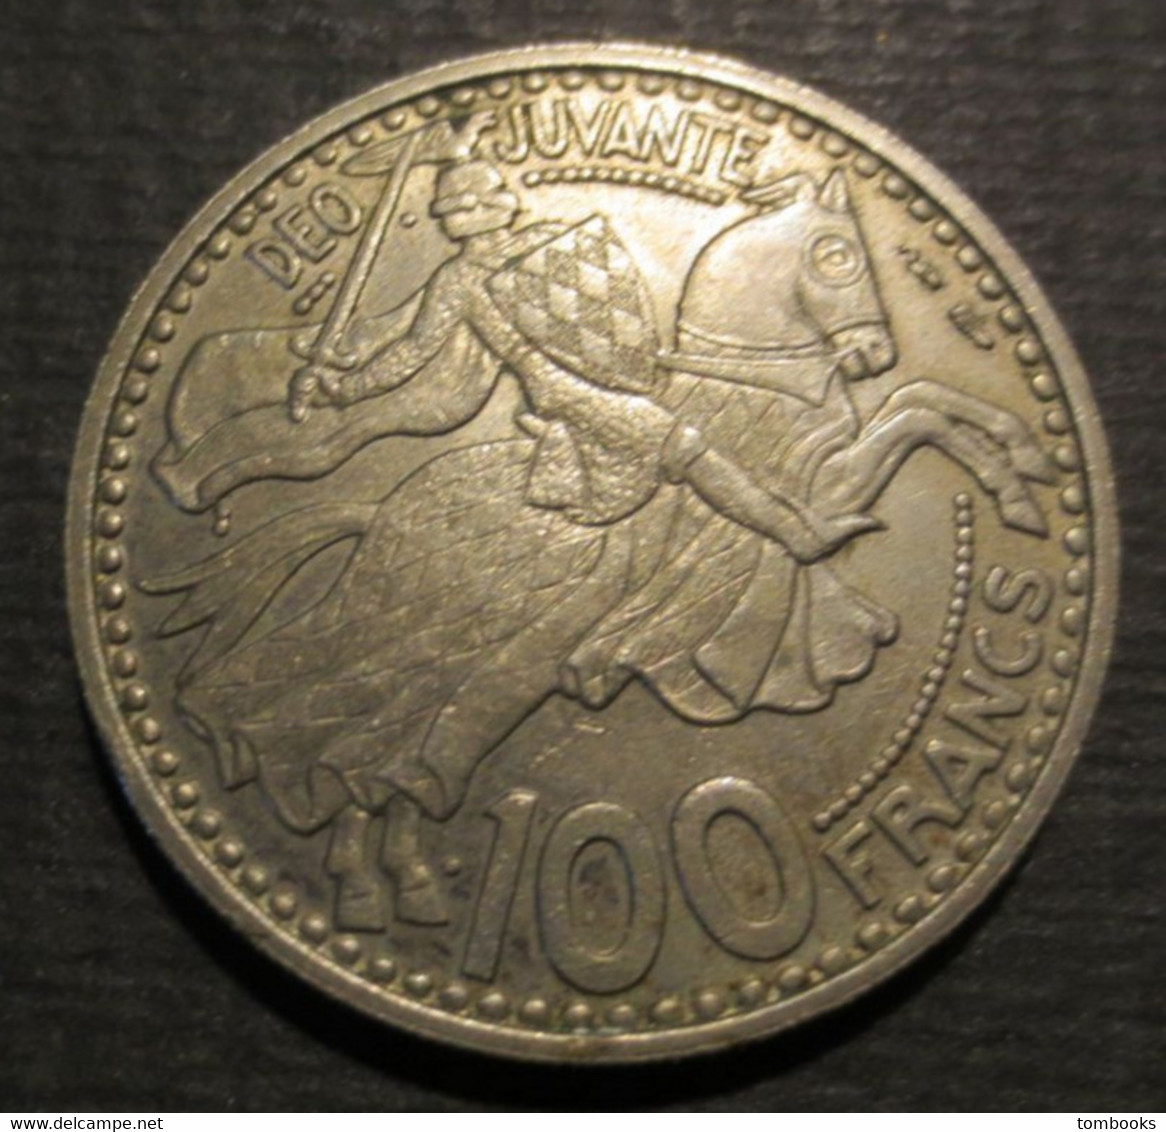 Monaco - Monnaie Ancienne - 100 Francs - Copper Nickel - Rainier III - Prince De Monaco - 1950 - - 1949-1956 Old Francs